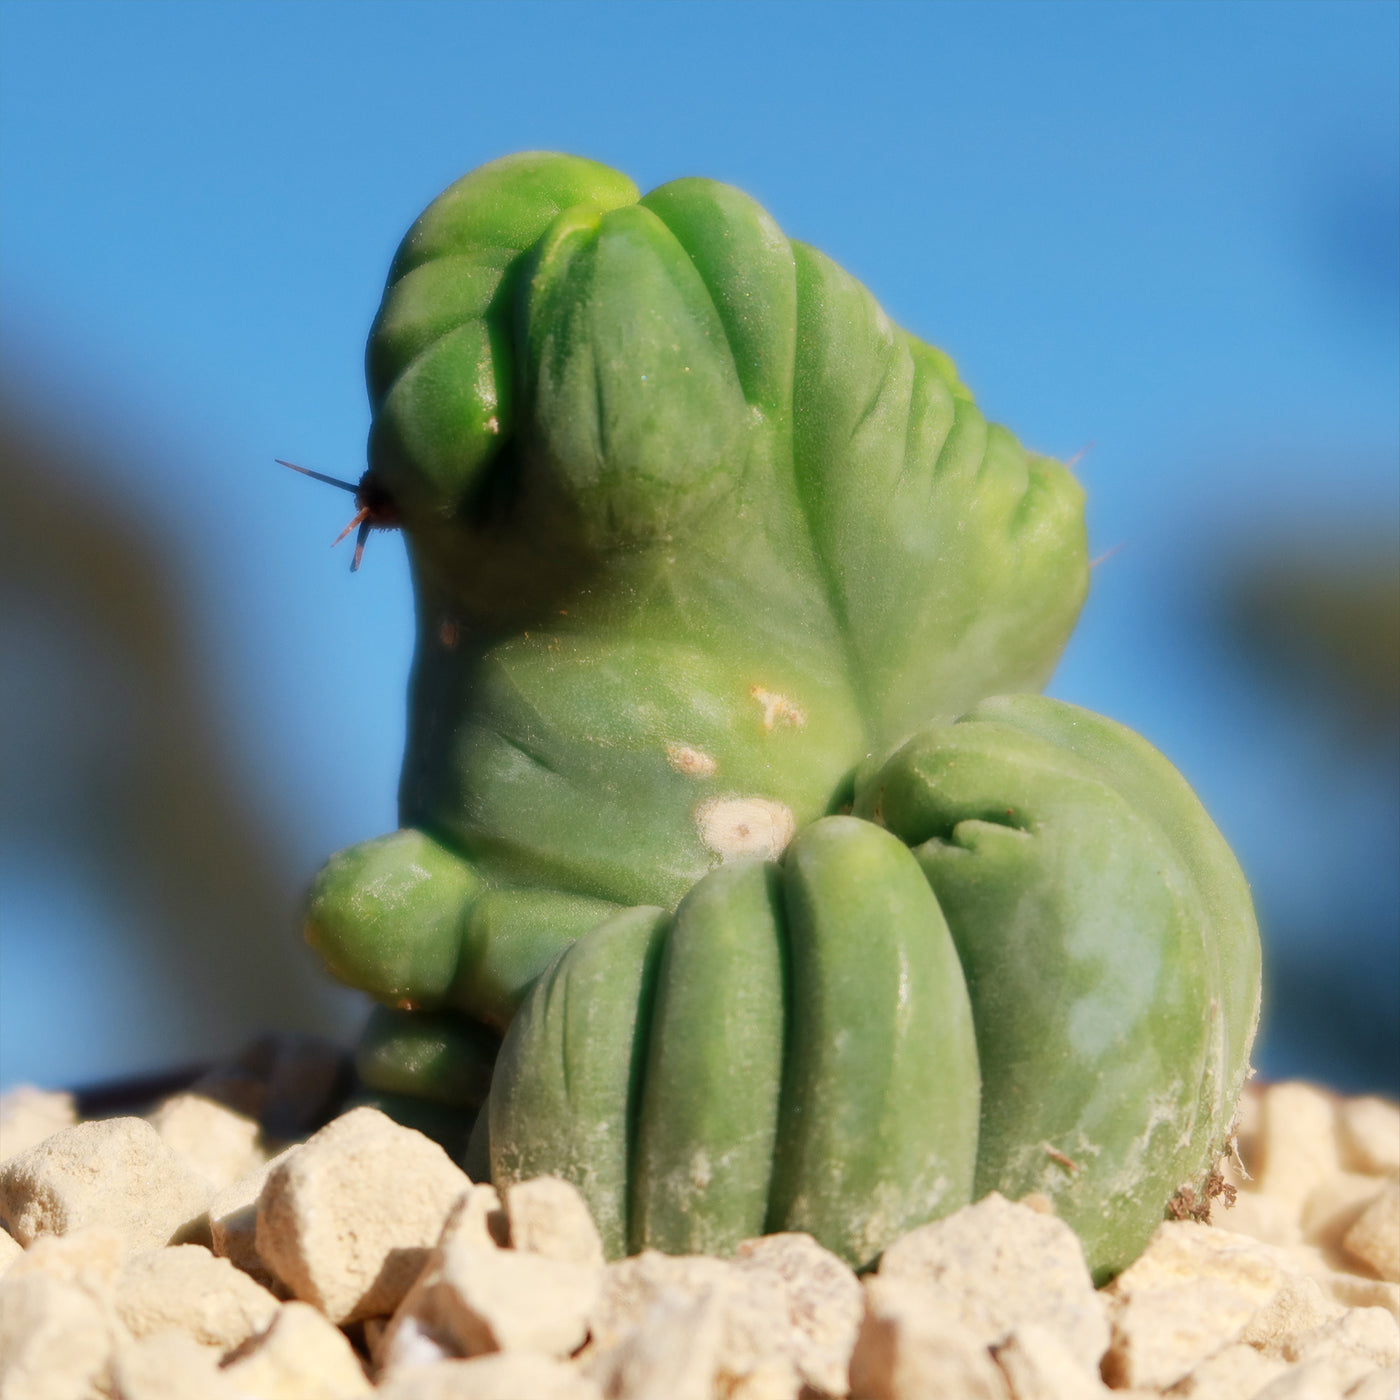 Crested Penis Cactus ‘Trichocereus bridgesii Crested’